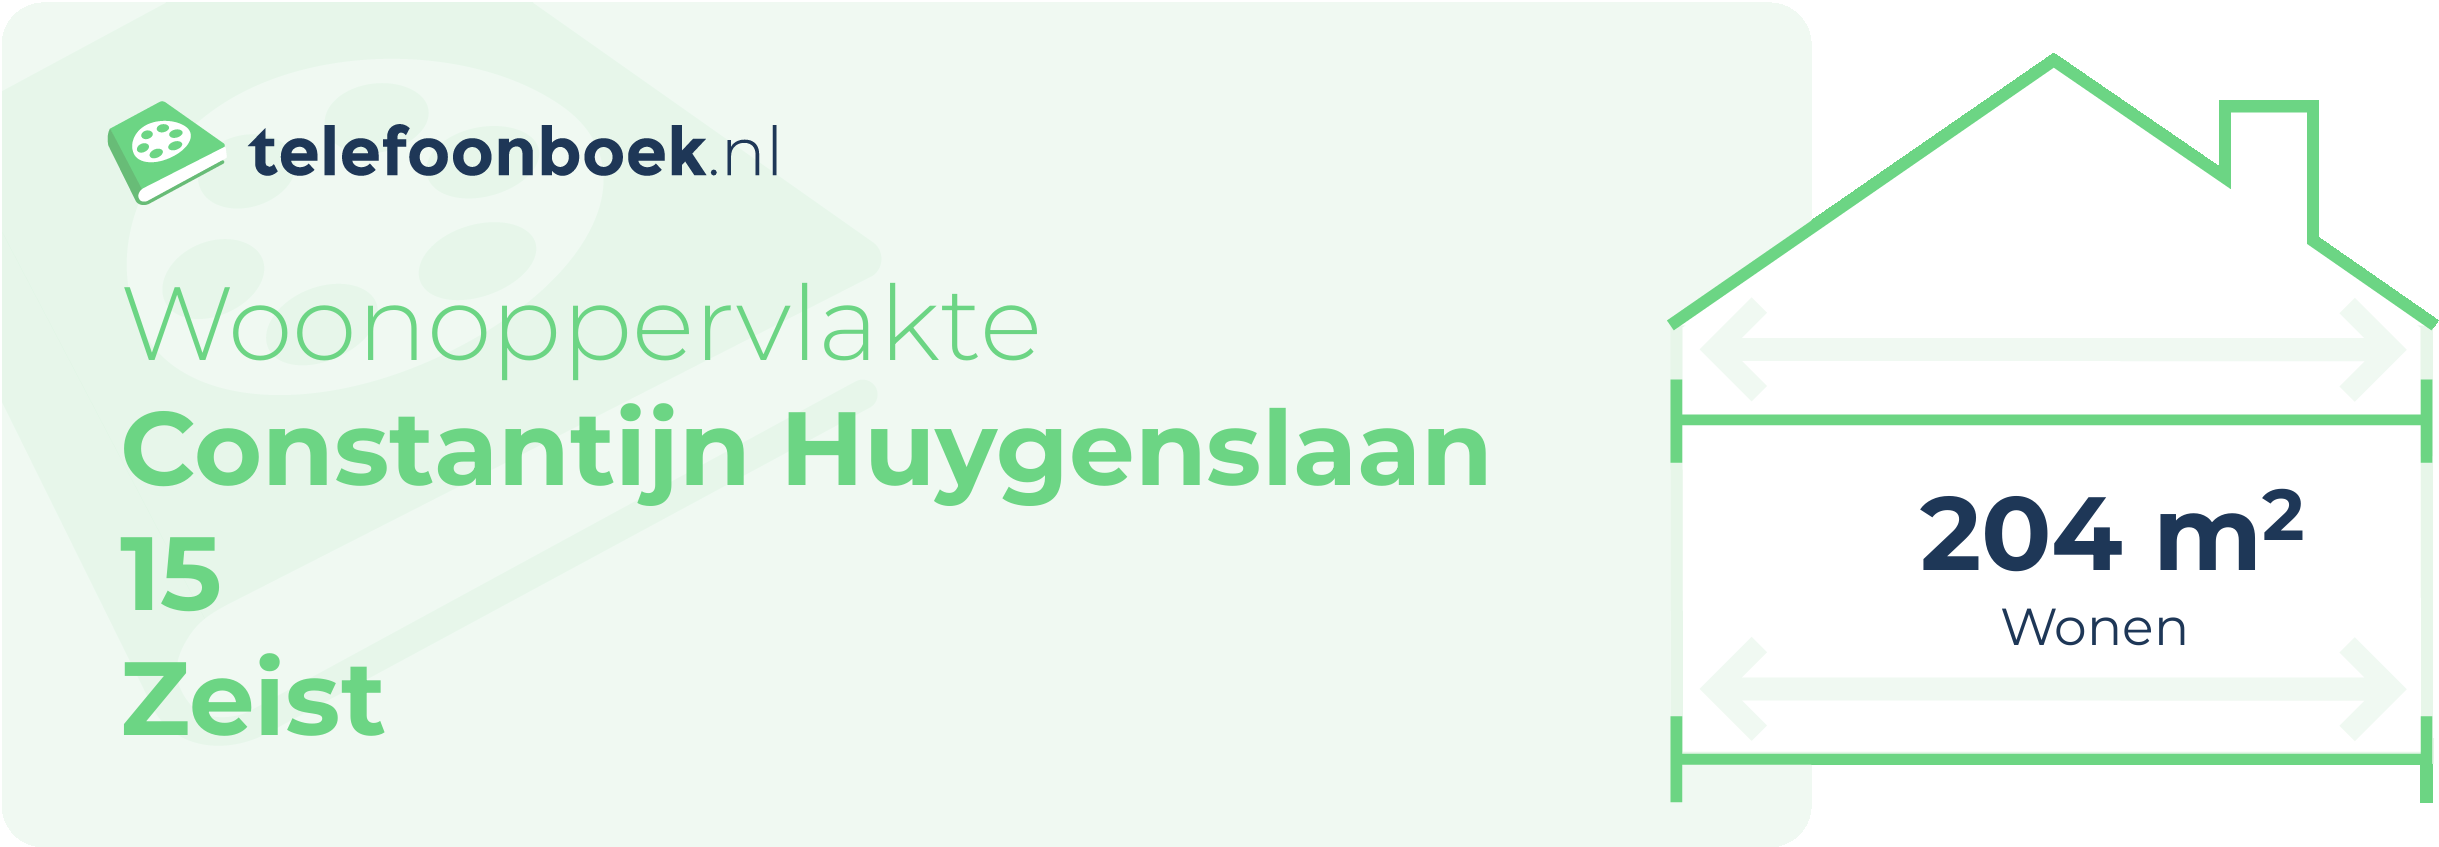 Woonoppervlakte Constantijn Huygenslaan 15 Zeist